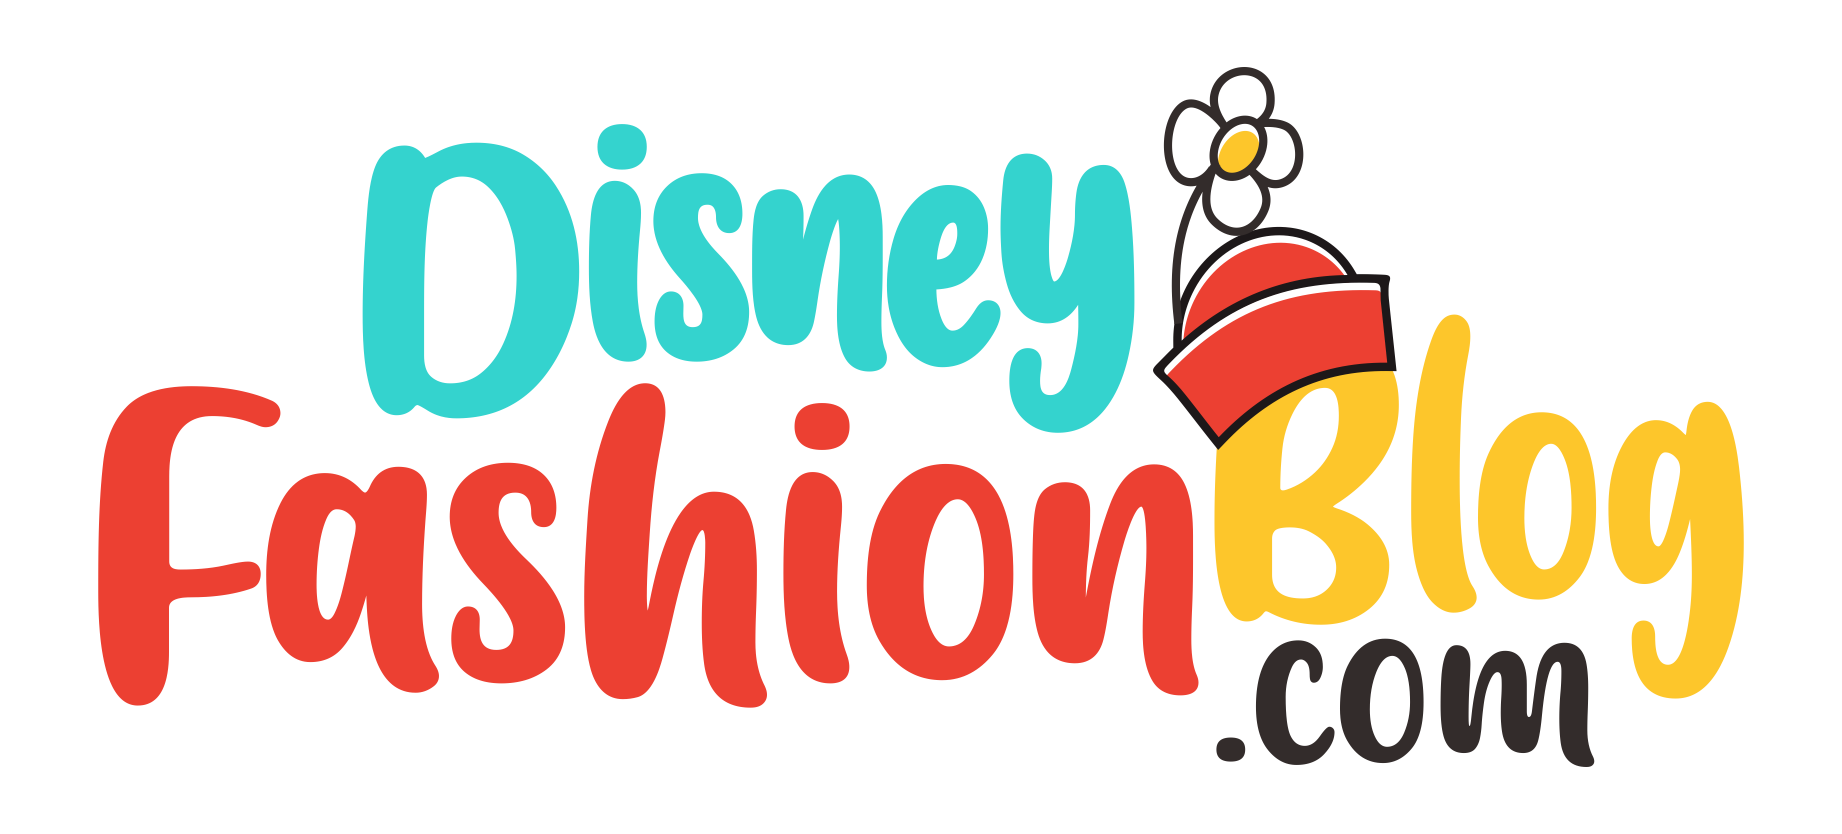 DisneyFashionBlog.com